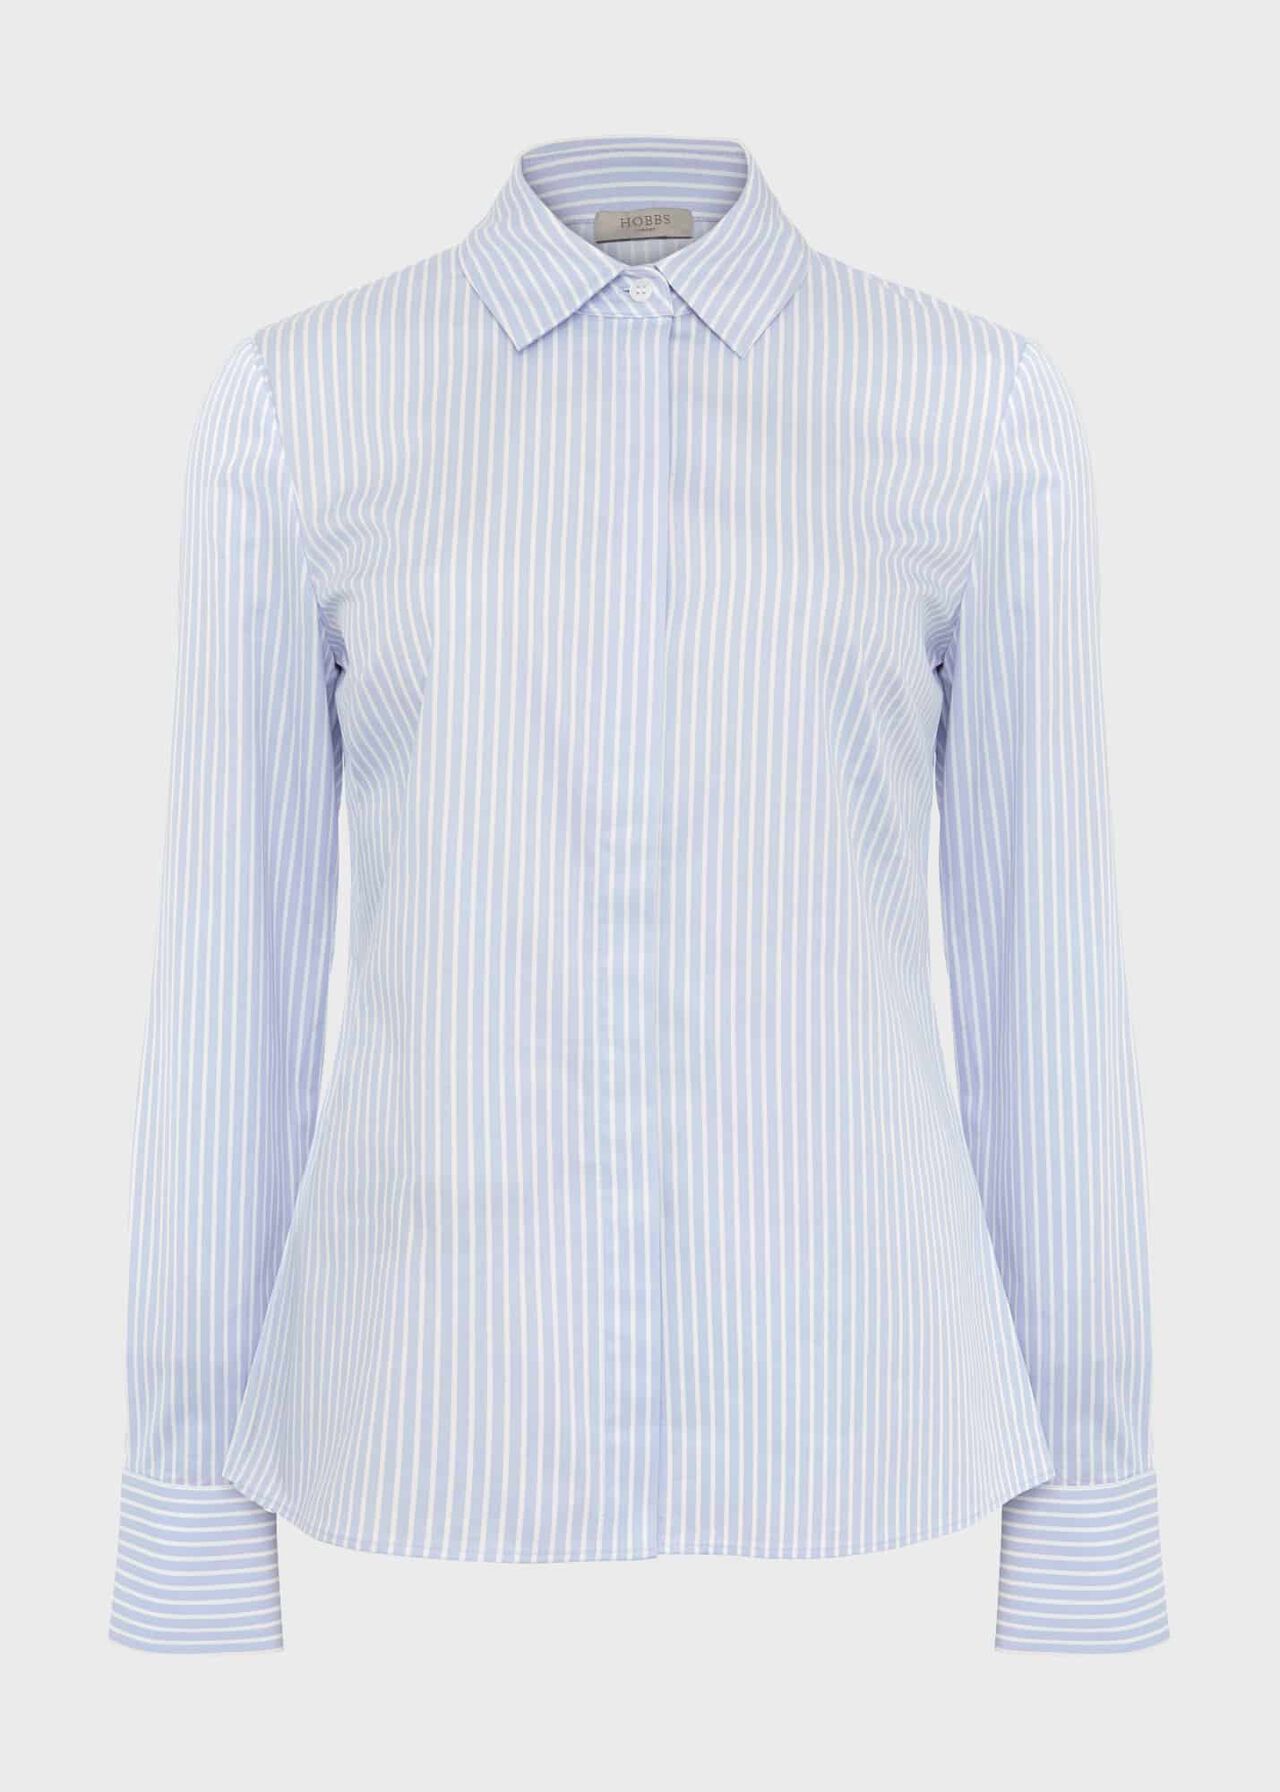 Victoria Cotton Blend Shirt, Pale Blue White, hi-res